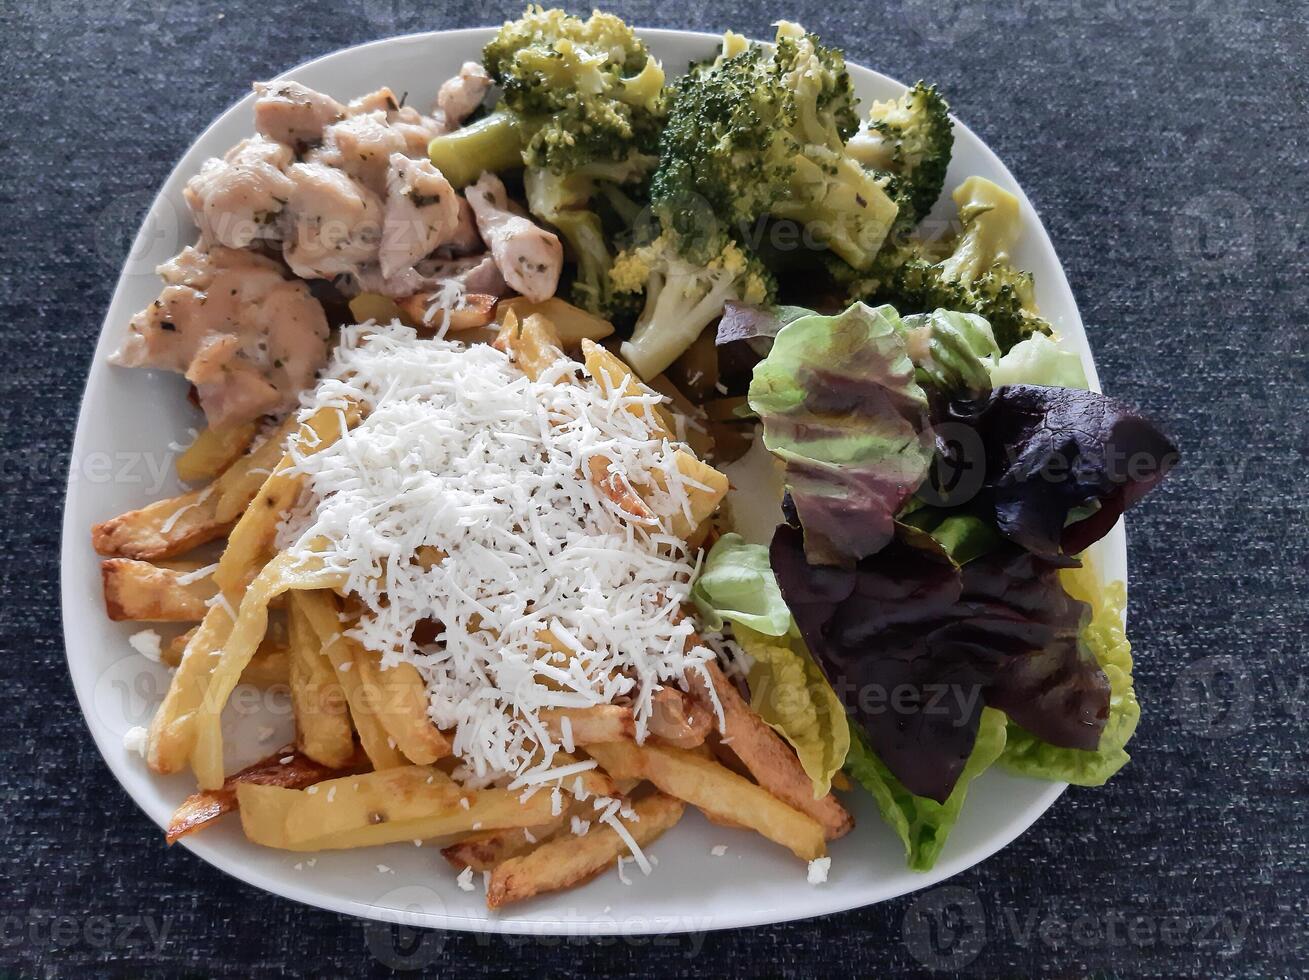 fait maison grillé poulet avec français frites, brocoli, fromage et vert salade, servi sur une blanc assiette photo